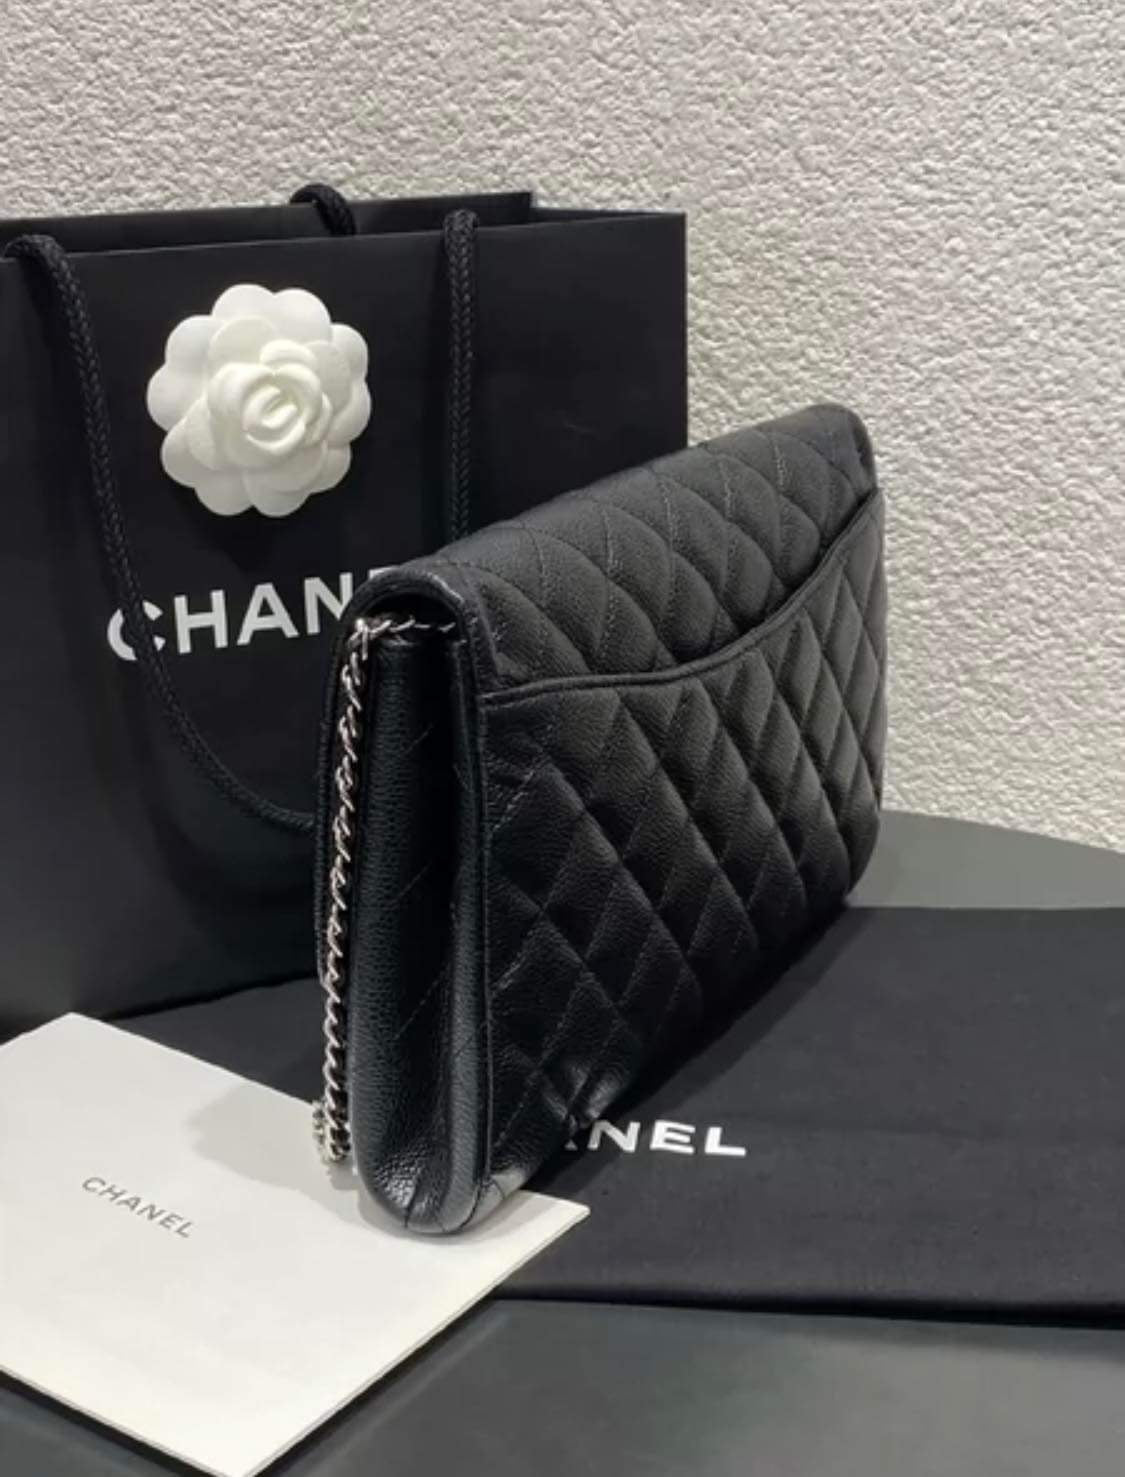 Chanel black caviar SHW clutch on chain